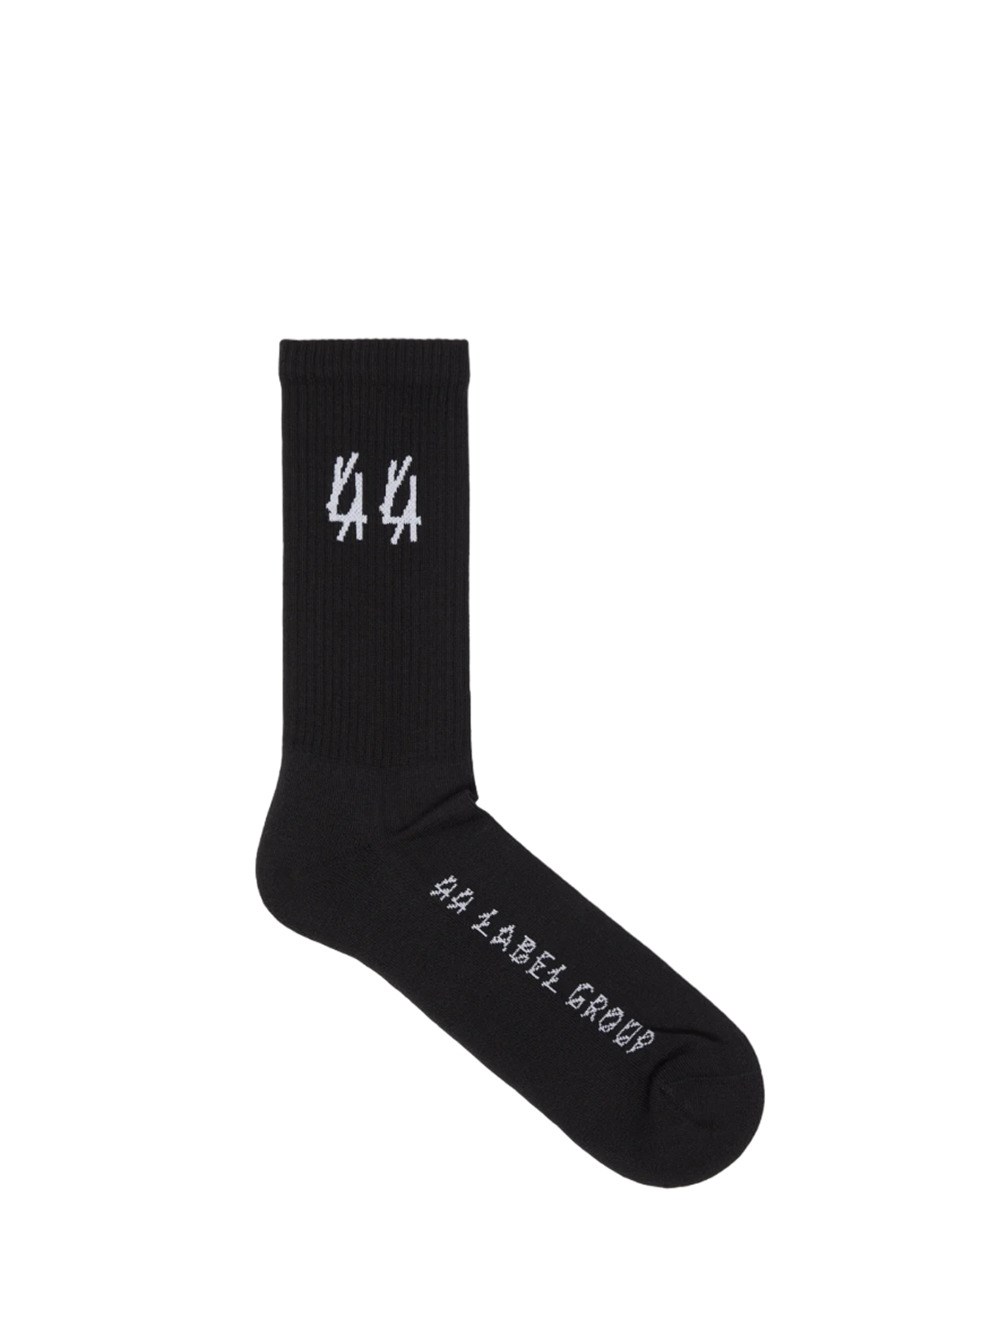 44 Label Group Classic Socks In Black